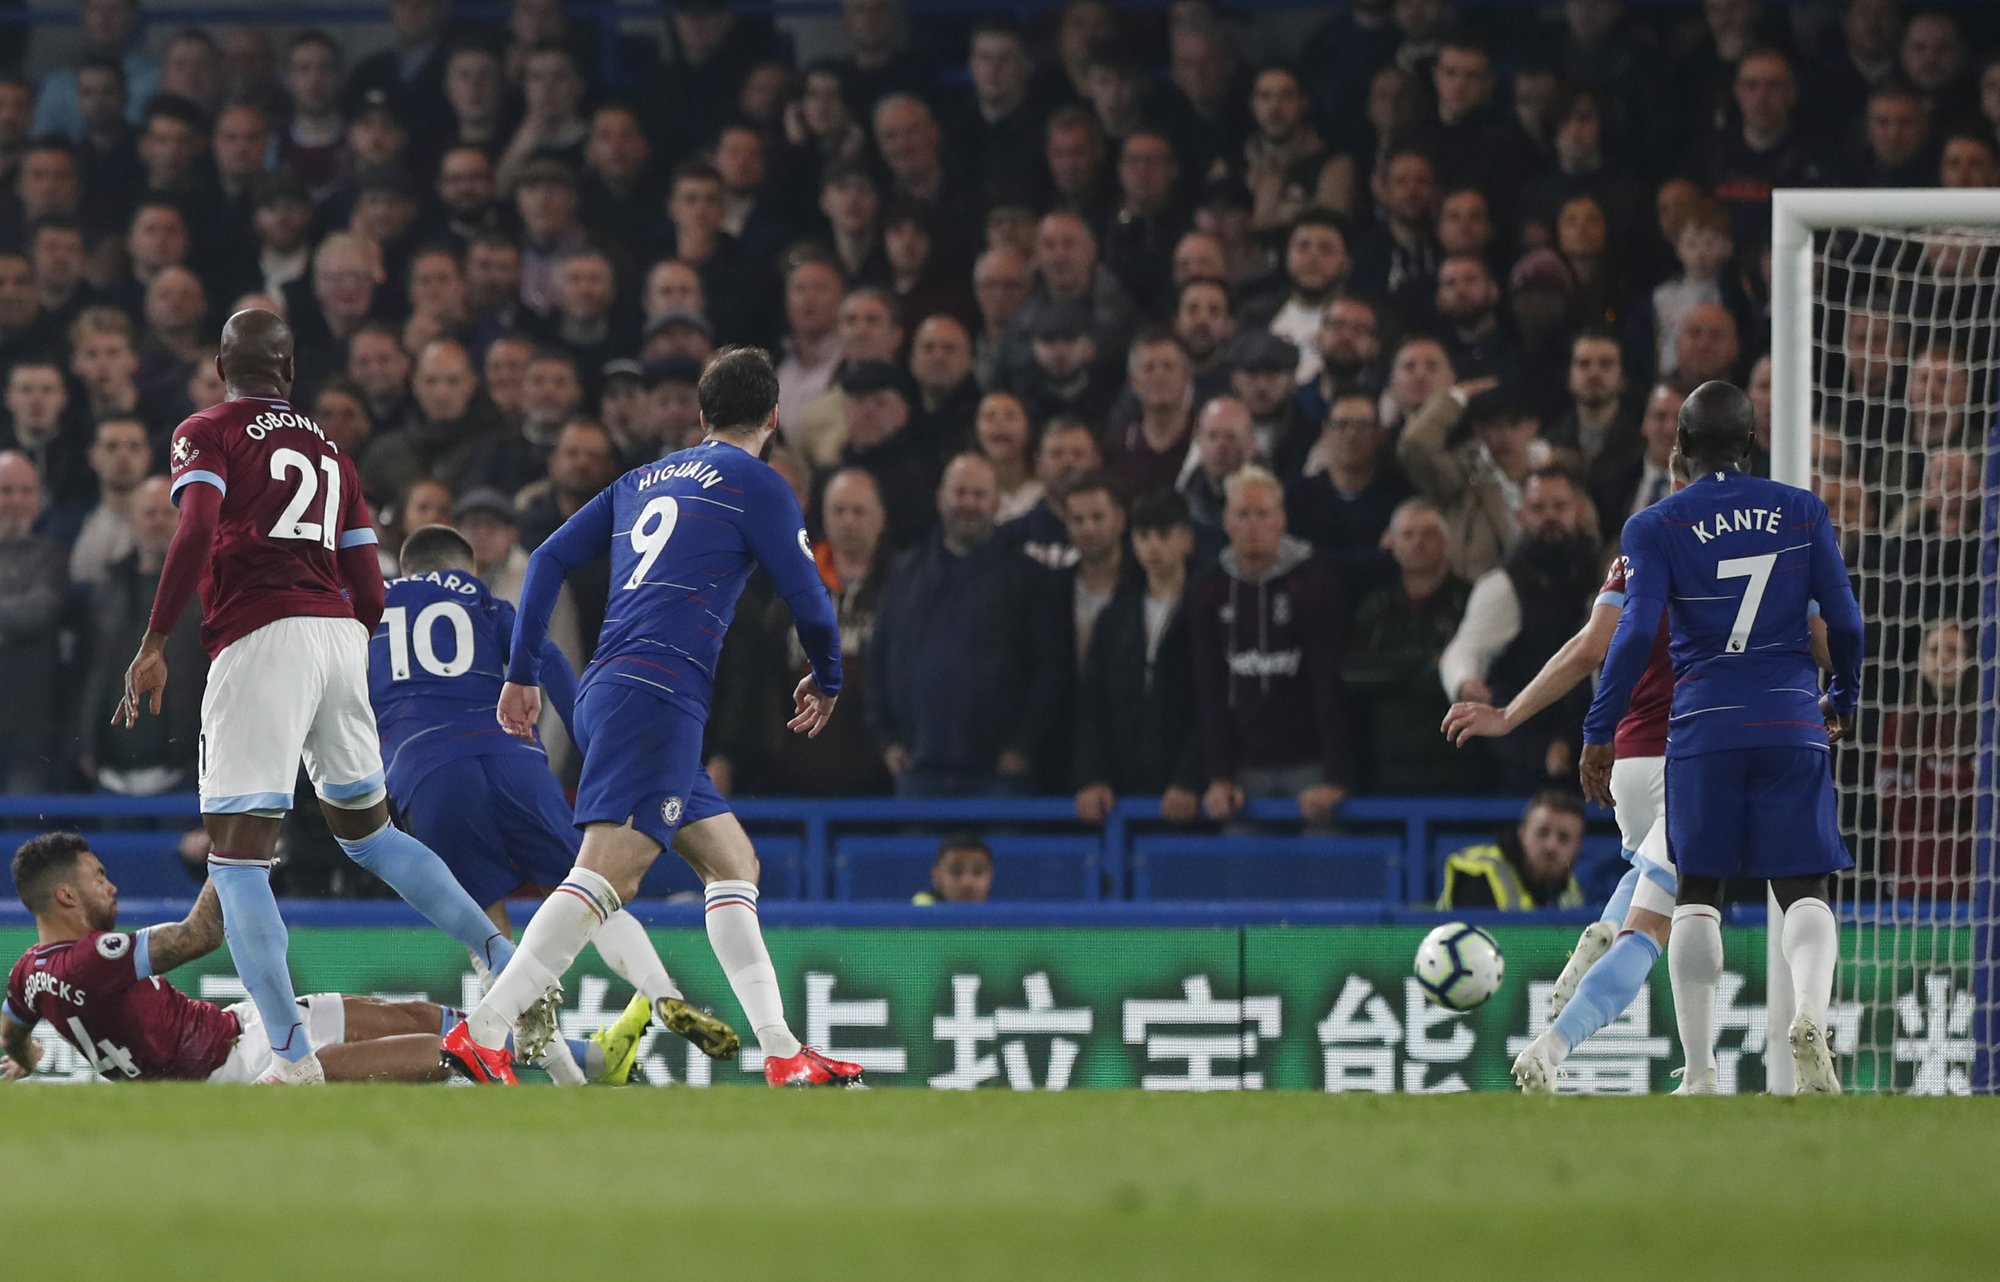 Hazard's latest brilliance raises doubts on Chelsea future